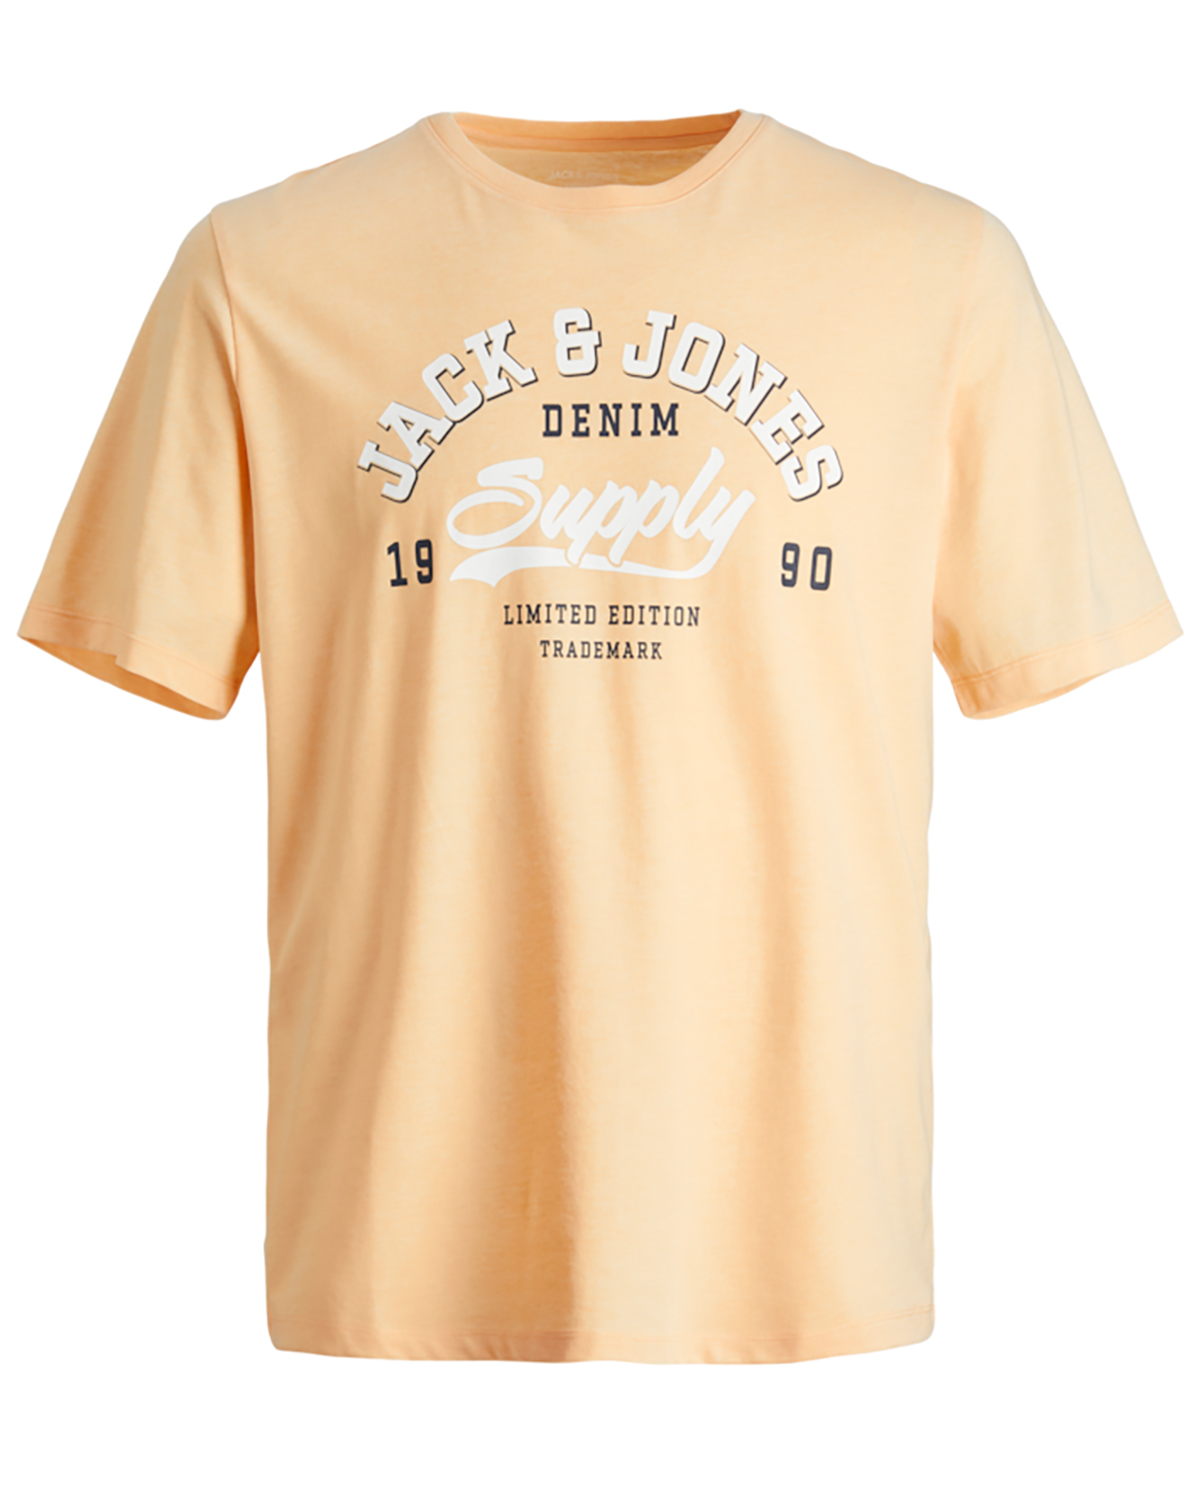 Se Jack & Jones JR t-shirt s/s, Logo tee, sand - 152 - 12år hos Umame.dk